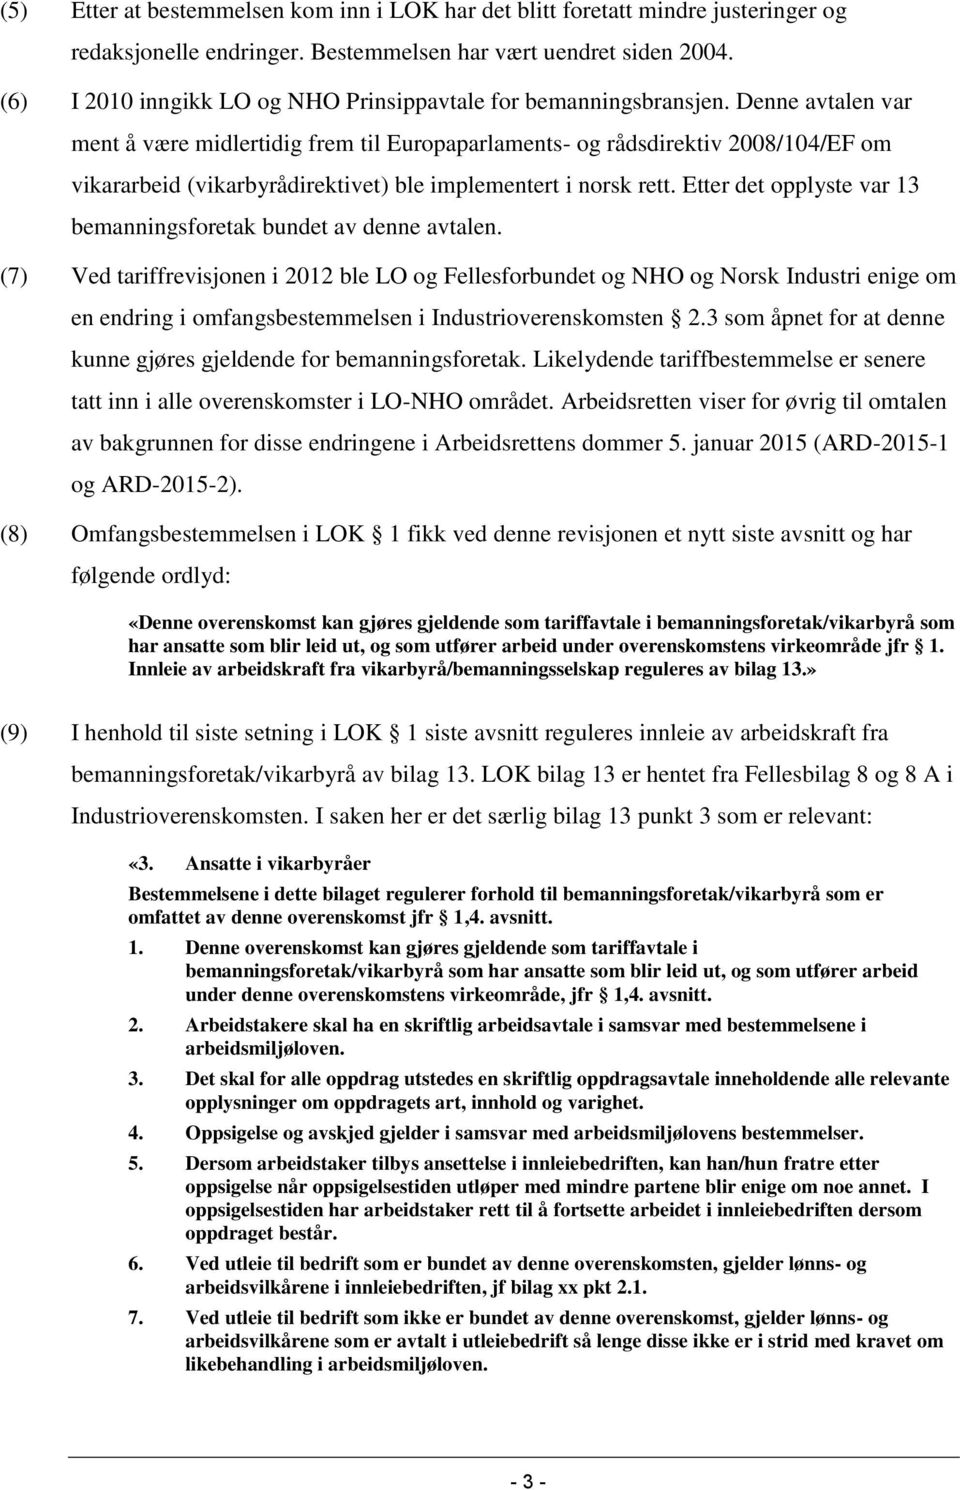 Denne avtalen var ment å være midlertidig frem til Europaparlaments- og rådsdirektiv 2008/104/EF om vikararbeid (vikarbyrådirektivet) ble implementert i norsk rett.